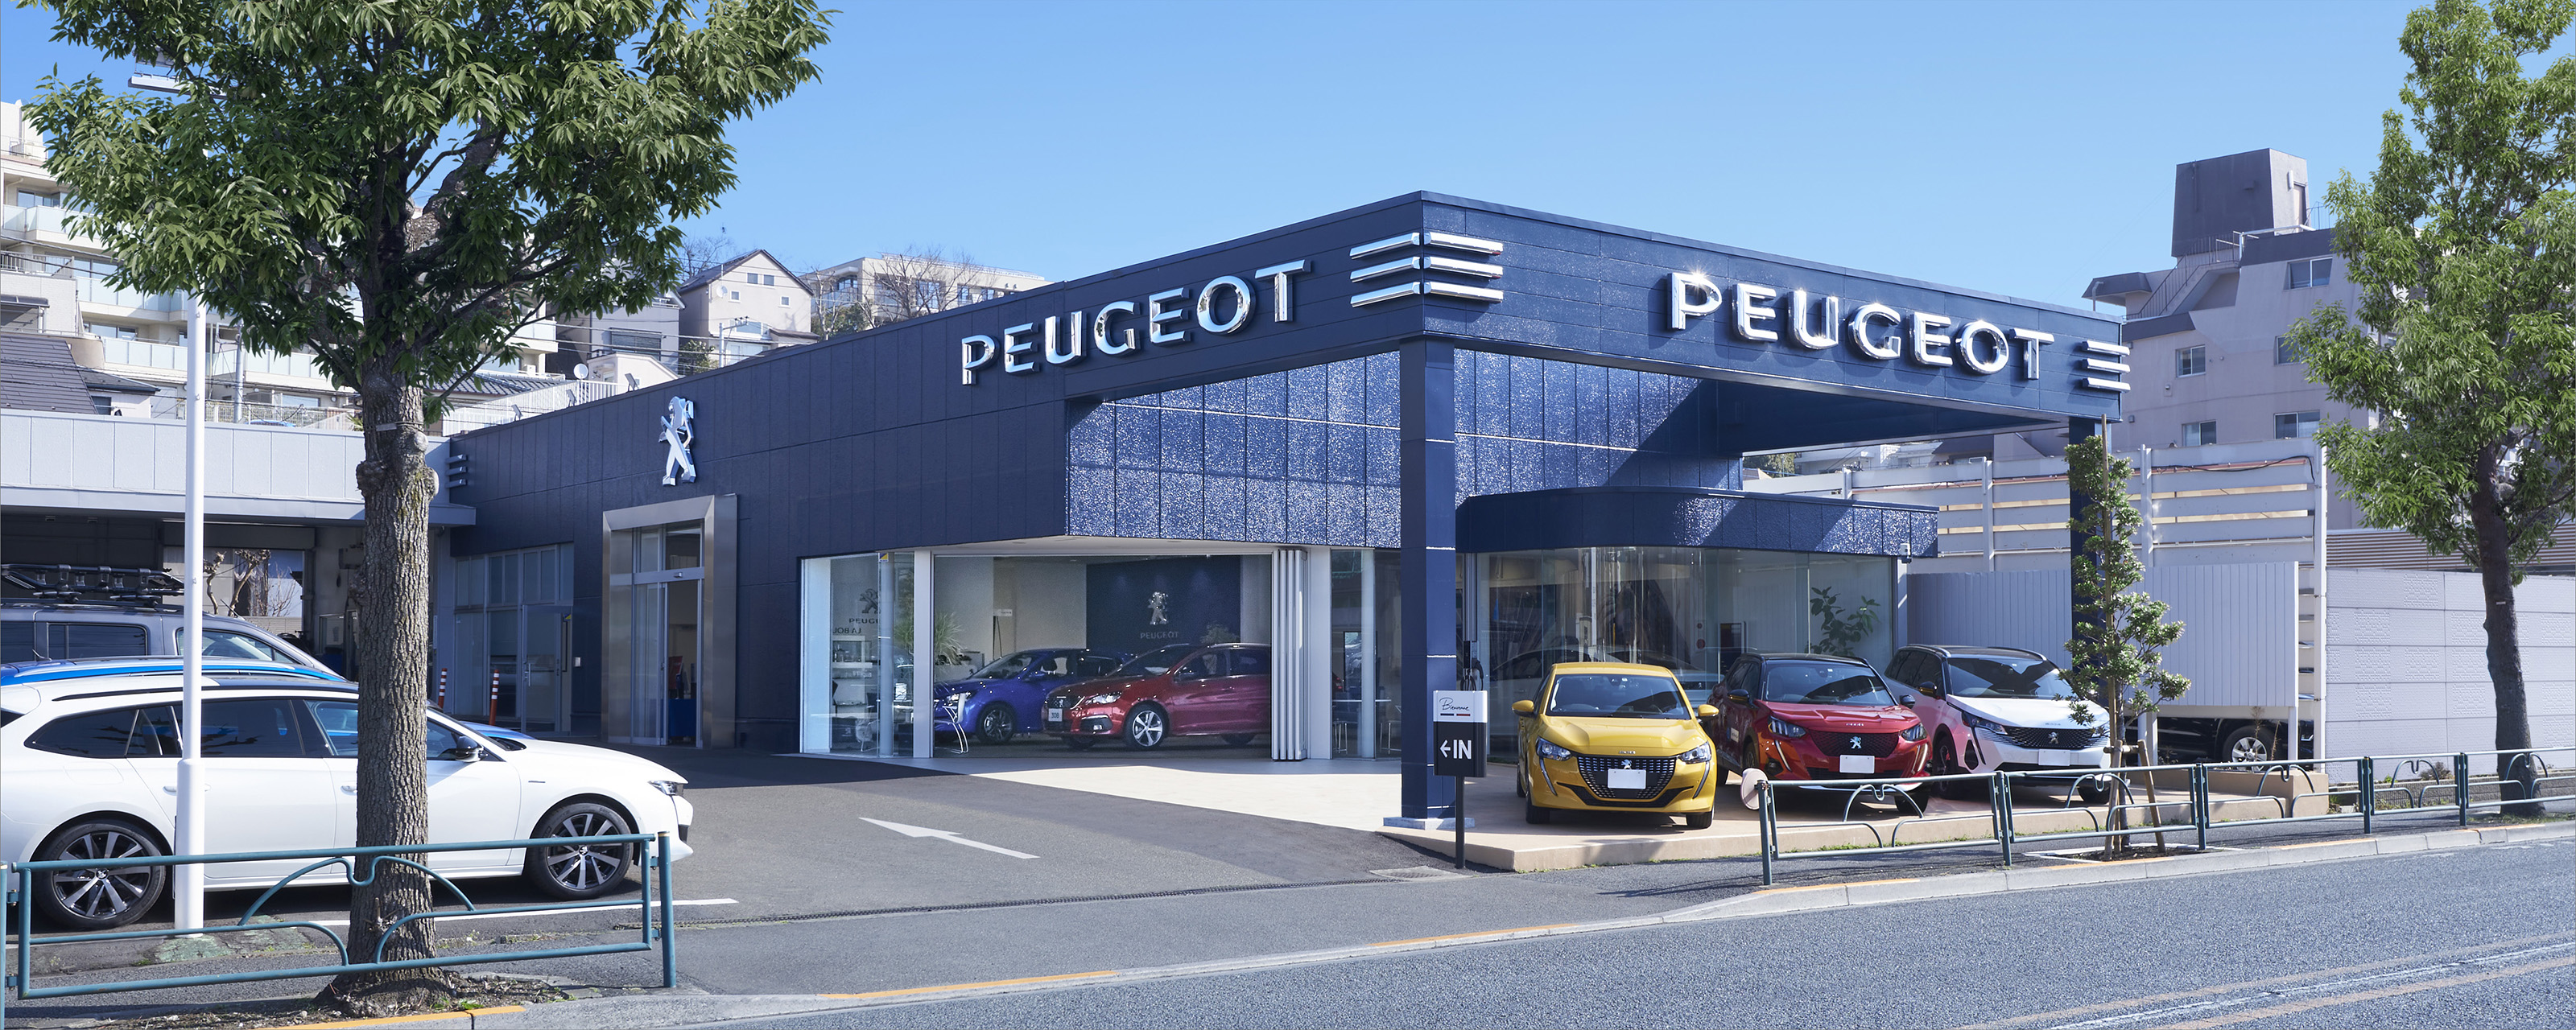 Peugeot_Seijo_3200_1280.jpg